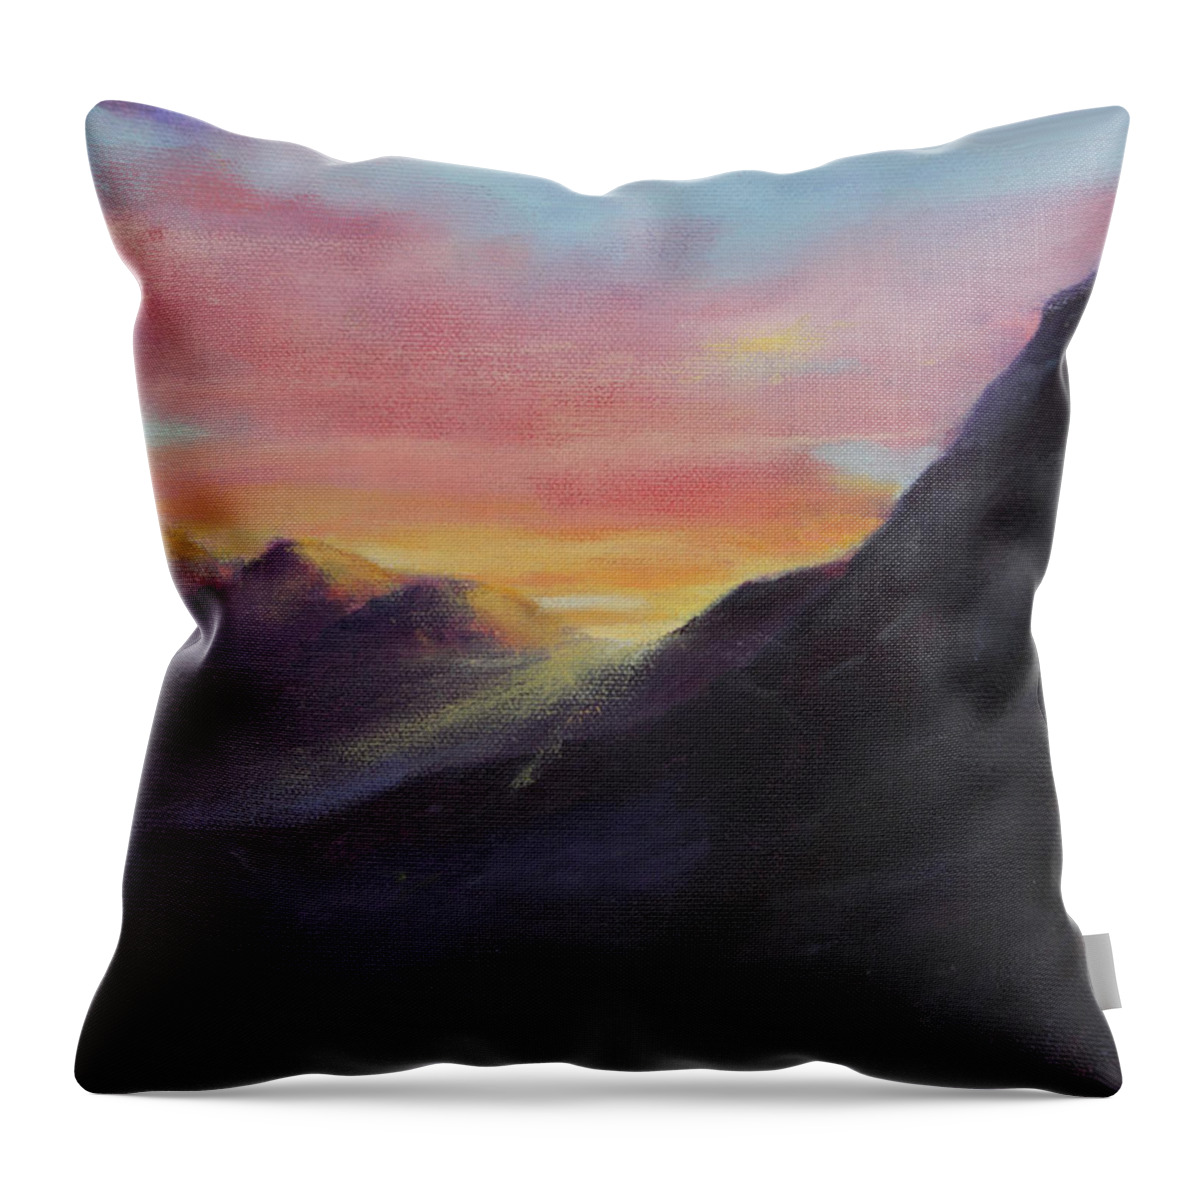 D￿r Throw Pillow featuring the painting Easter Sunrise by Maria Hunt